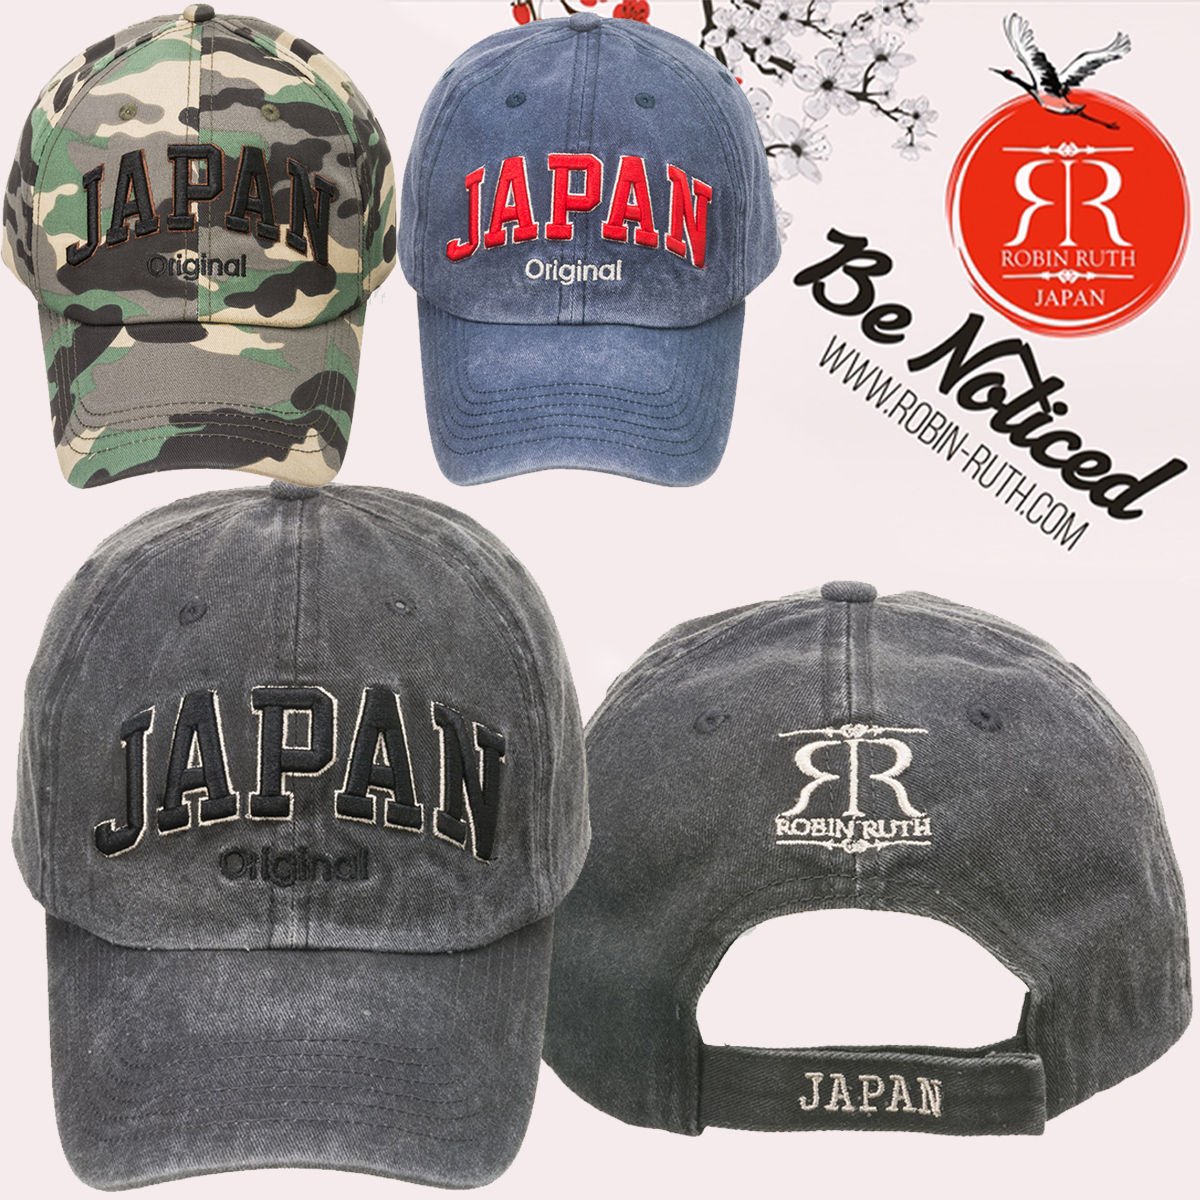 【Robin Ruth】ロビン・ルス JAPAN CAP(レギュラー) 帽子 キャップ